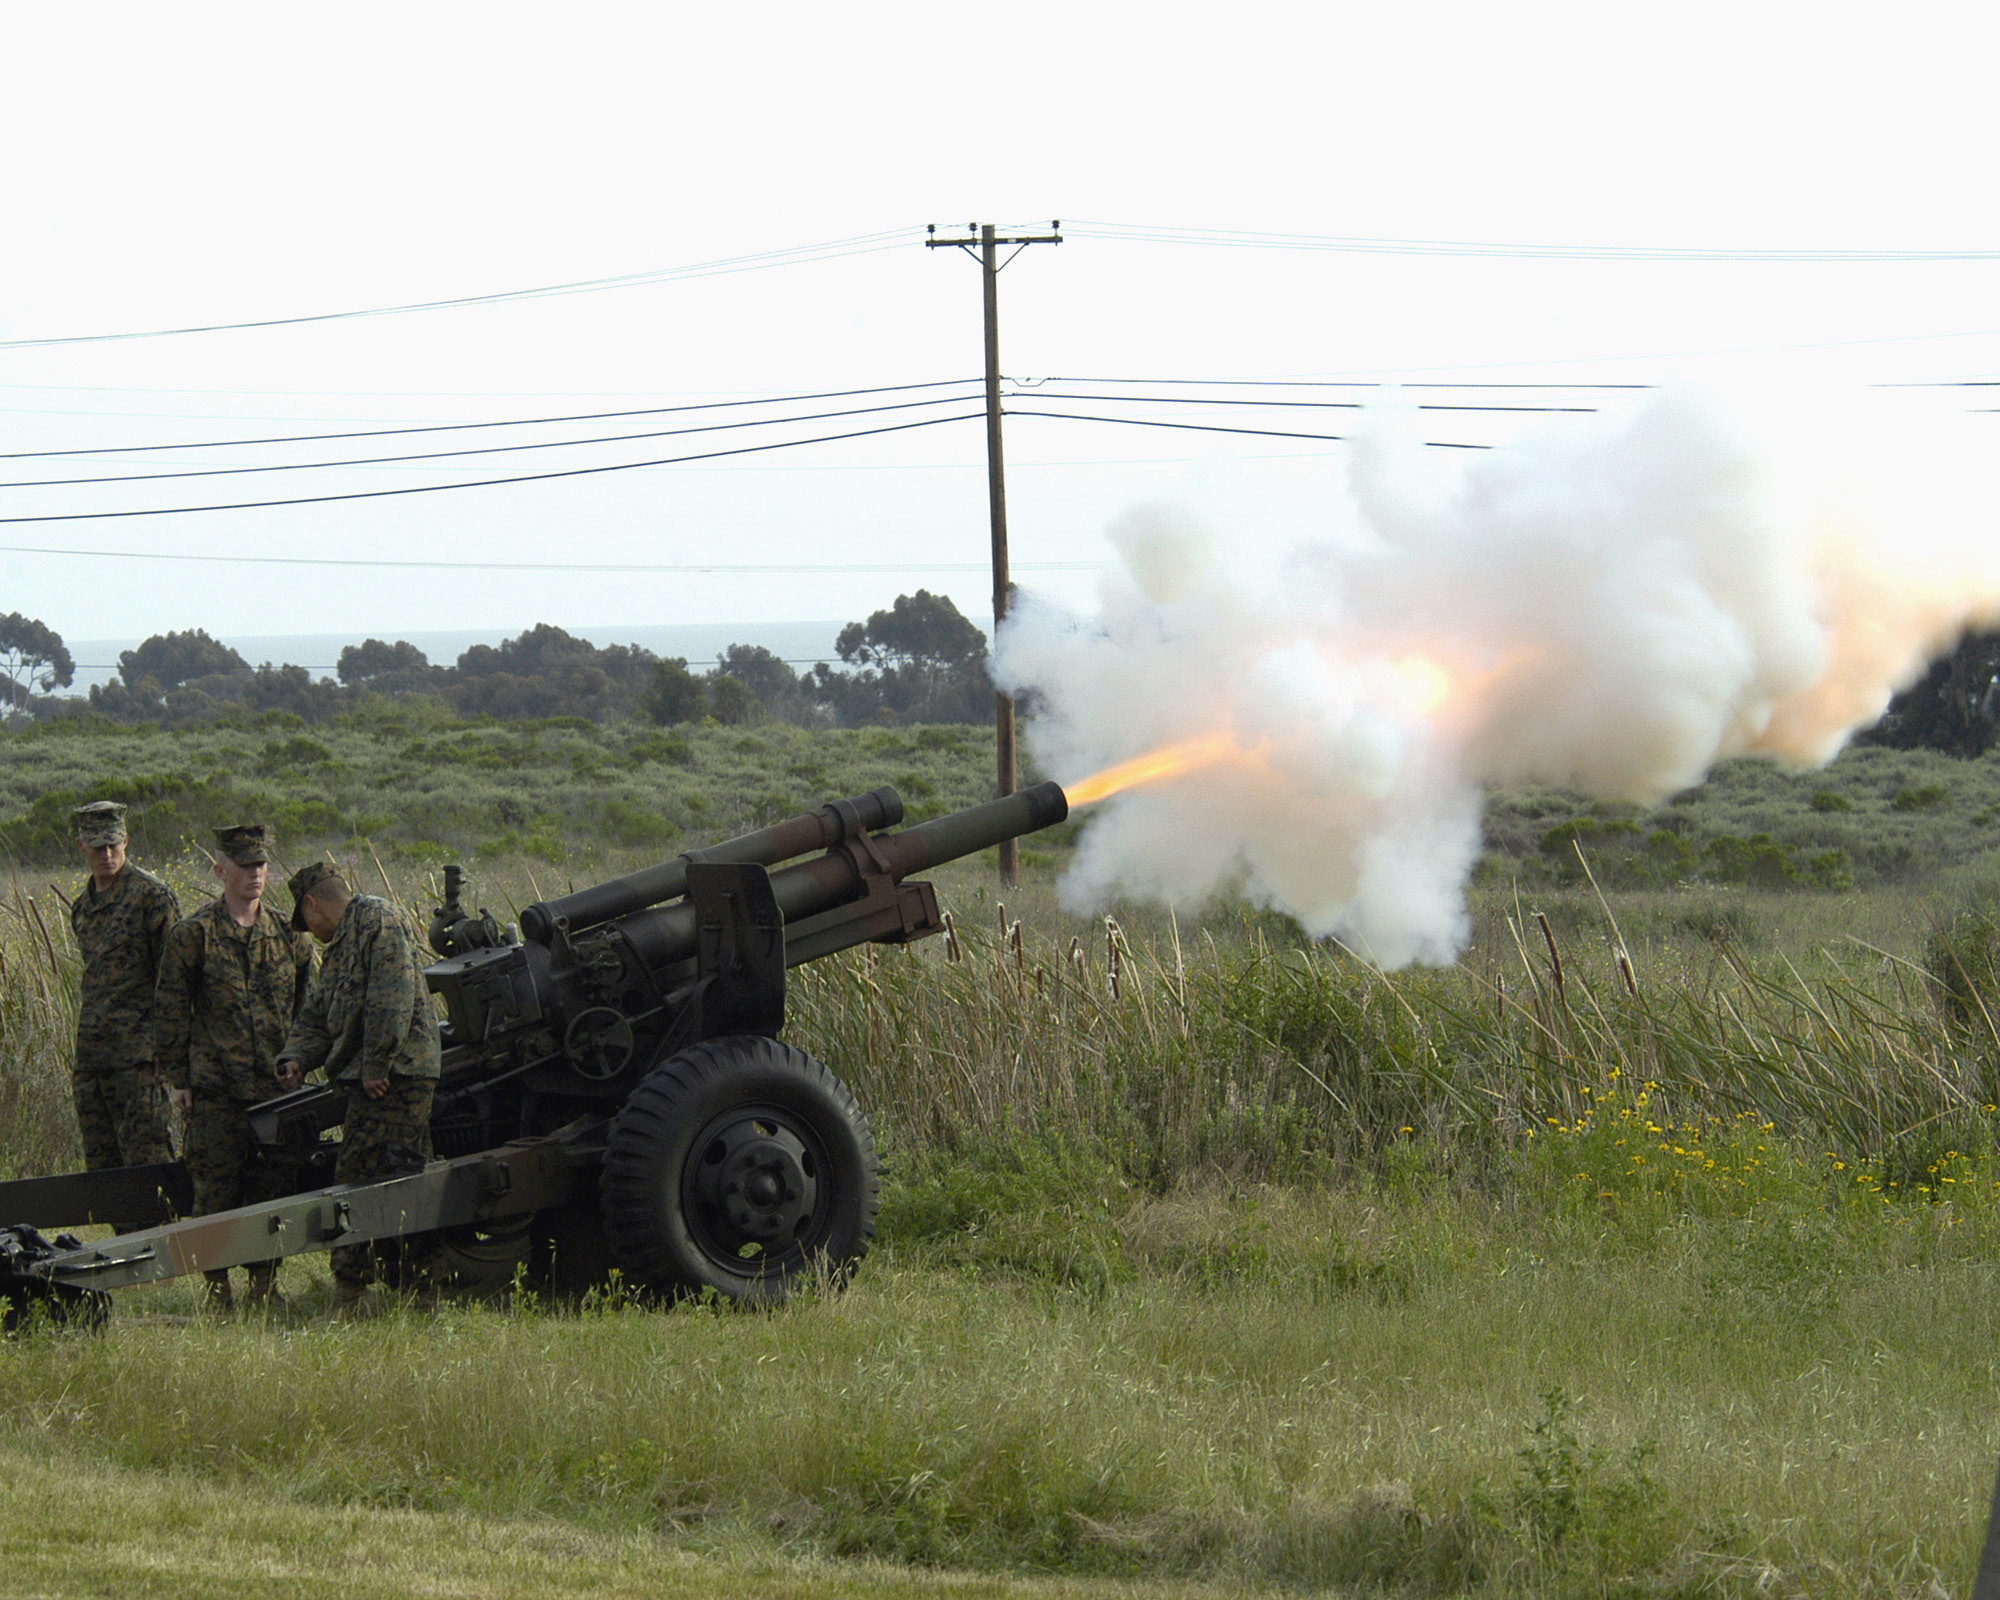 La Lituanie a transféré à l'Ukraine des obusiers américains M101 de 105 mm remorqués, qui peuvent tirer jusqu'à 11 km.